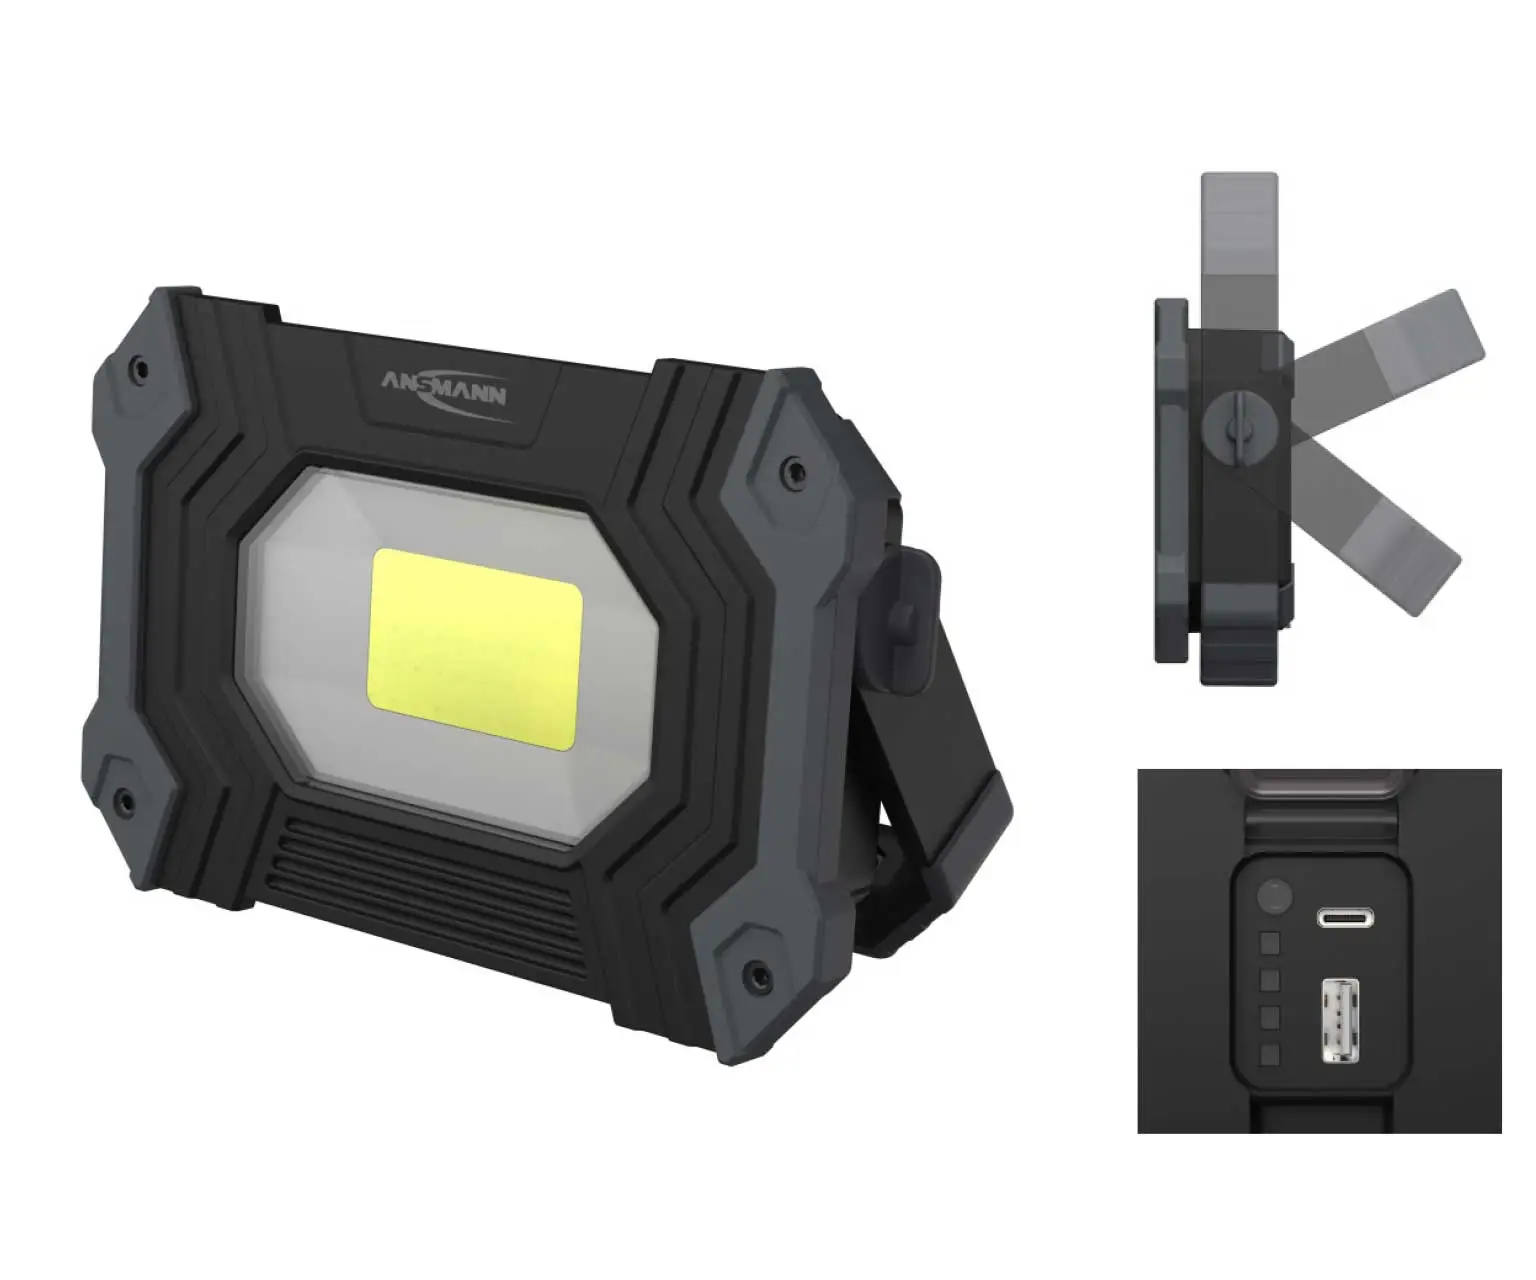 Kompakter LED Handscheinwerfer in schwarz mit Bügel, Ladeanschluss und Powerbank-Ladefunktion über USB